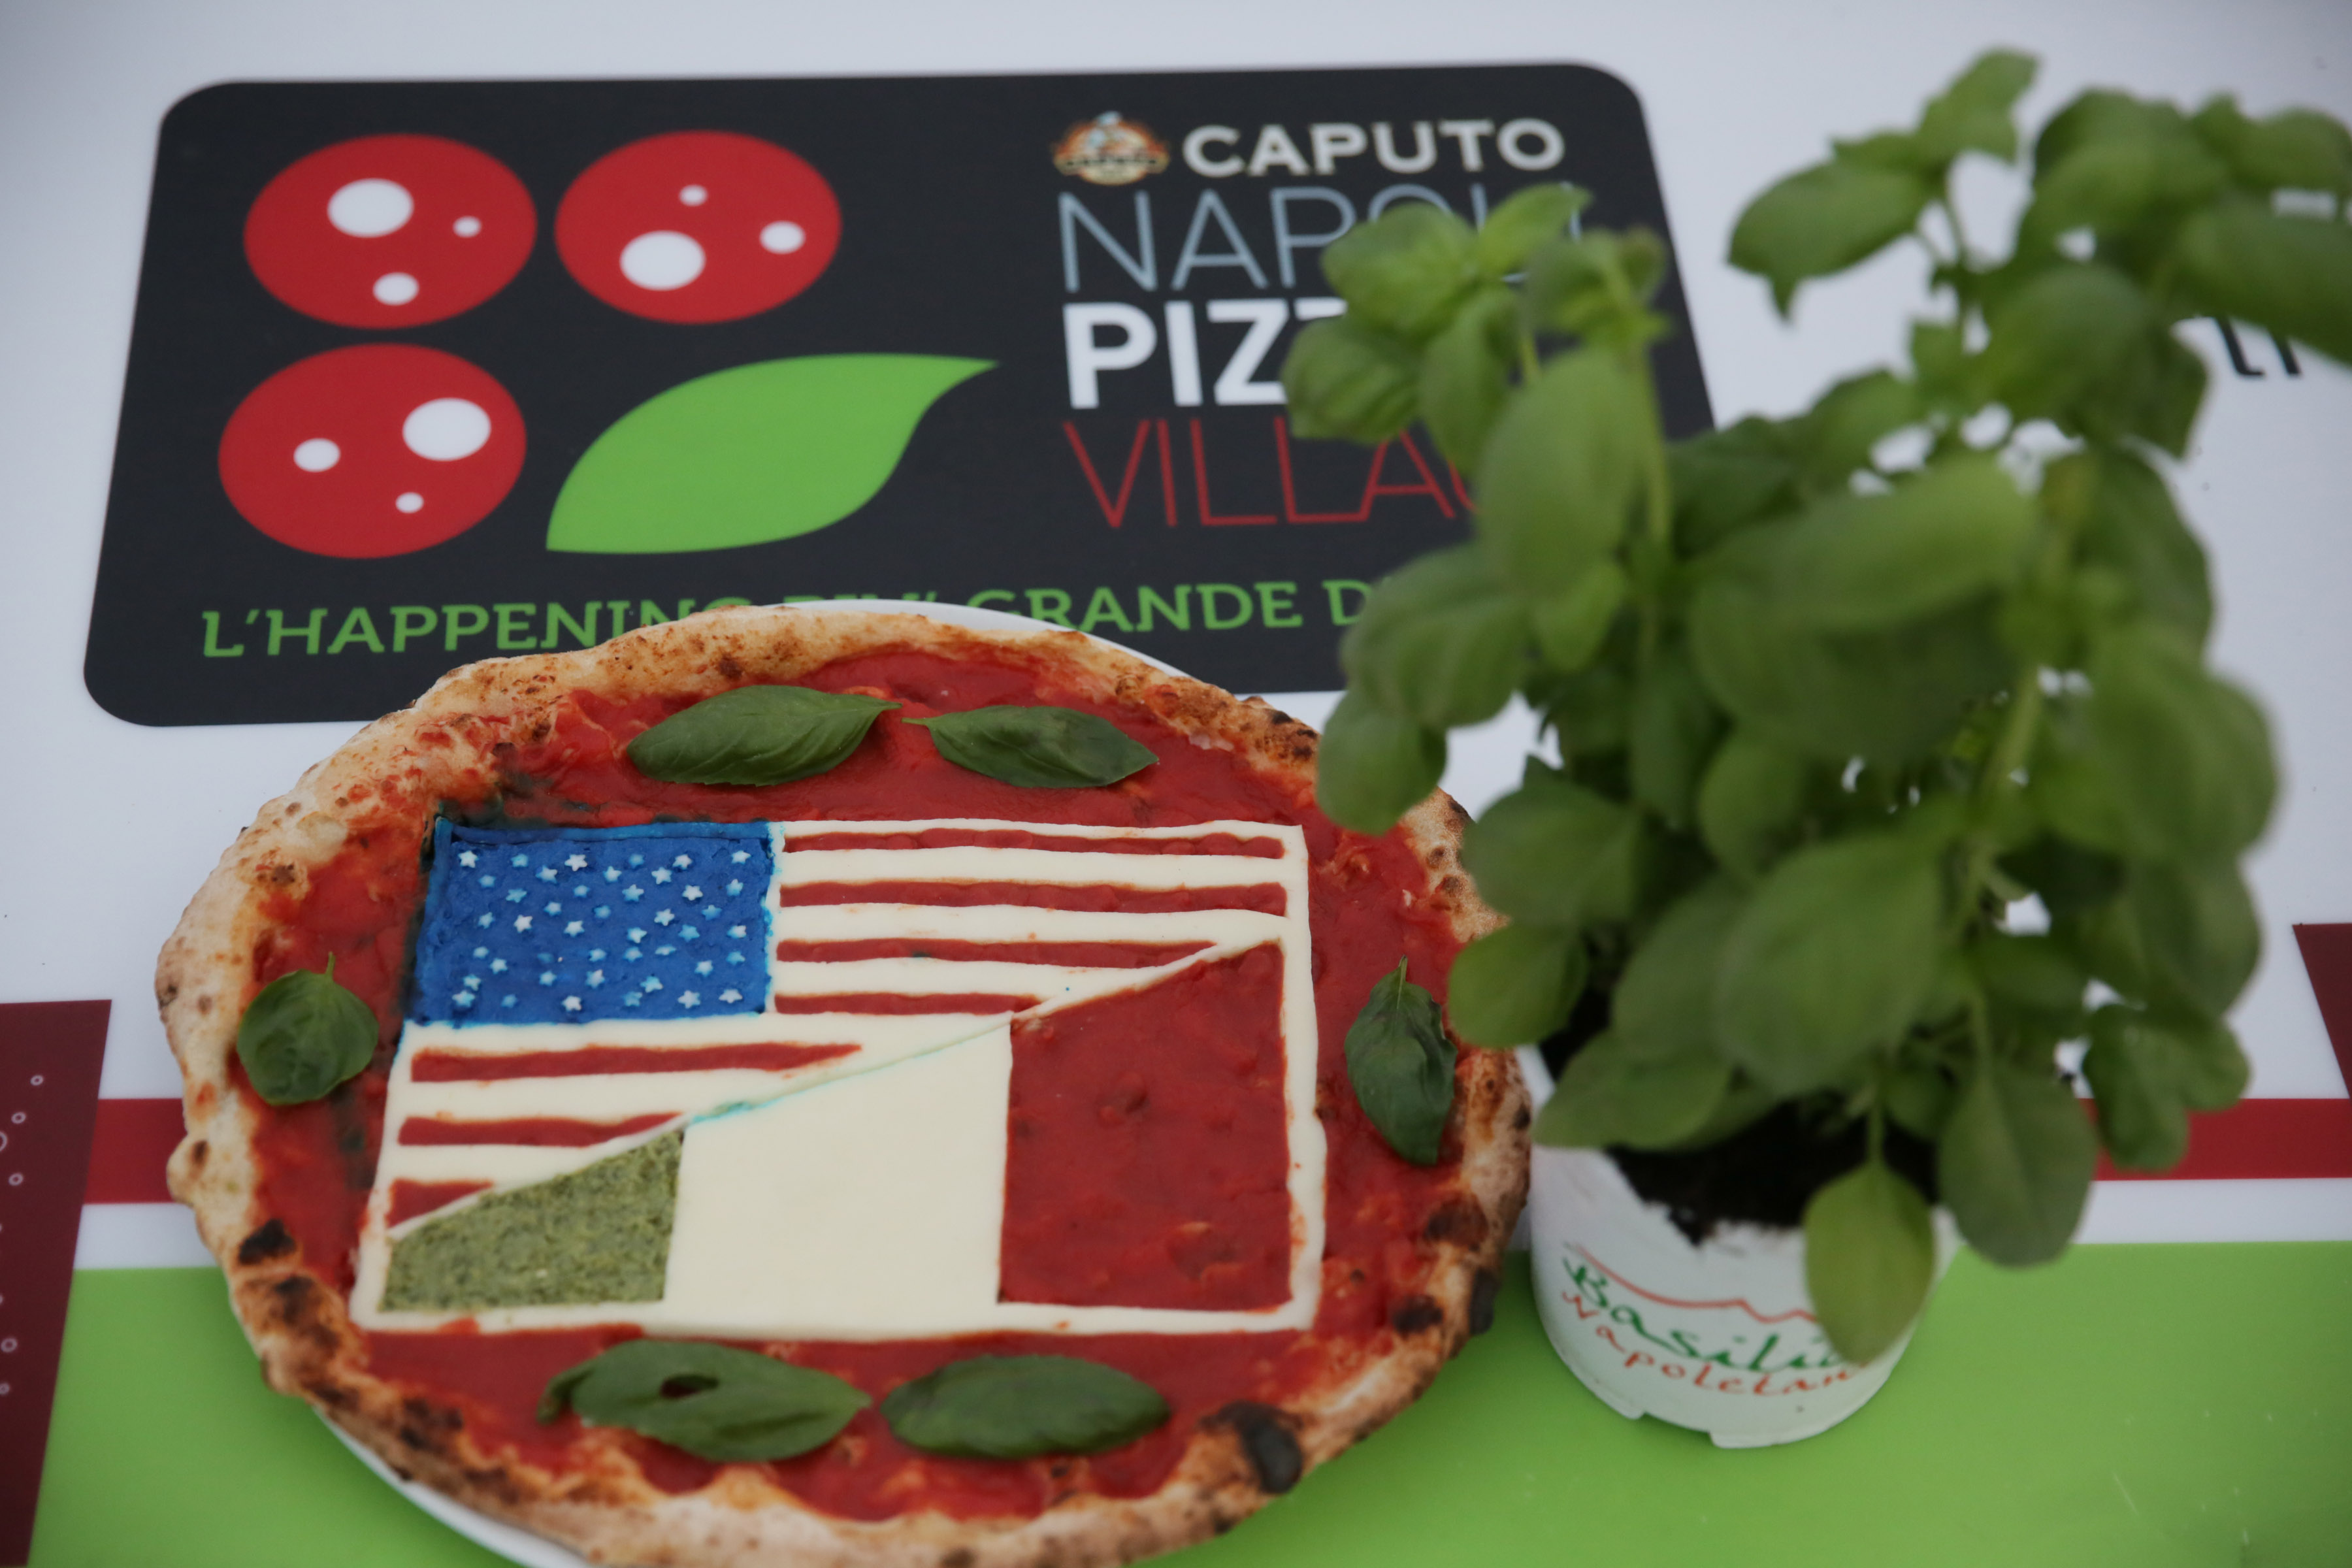 A Napoli Pizza Village gemellaggio con New York